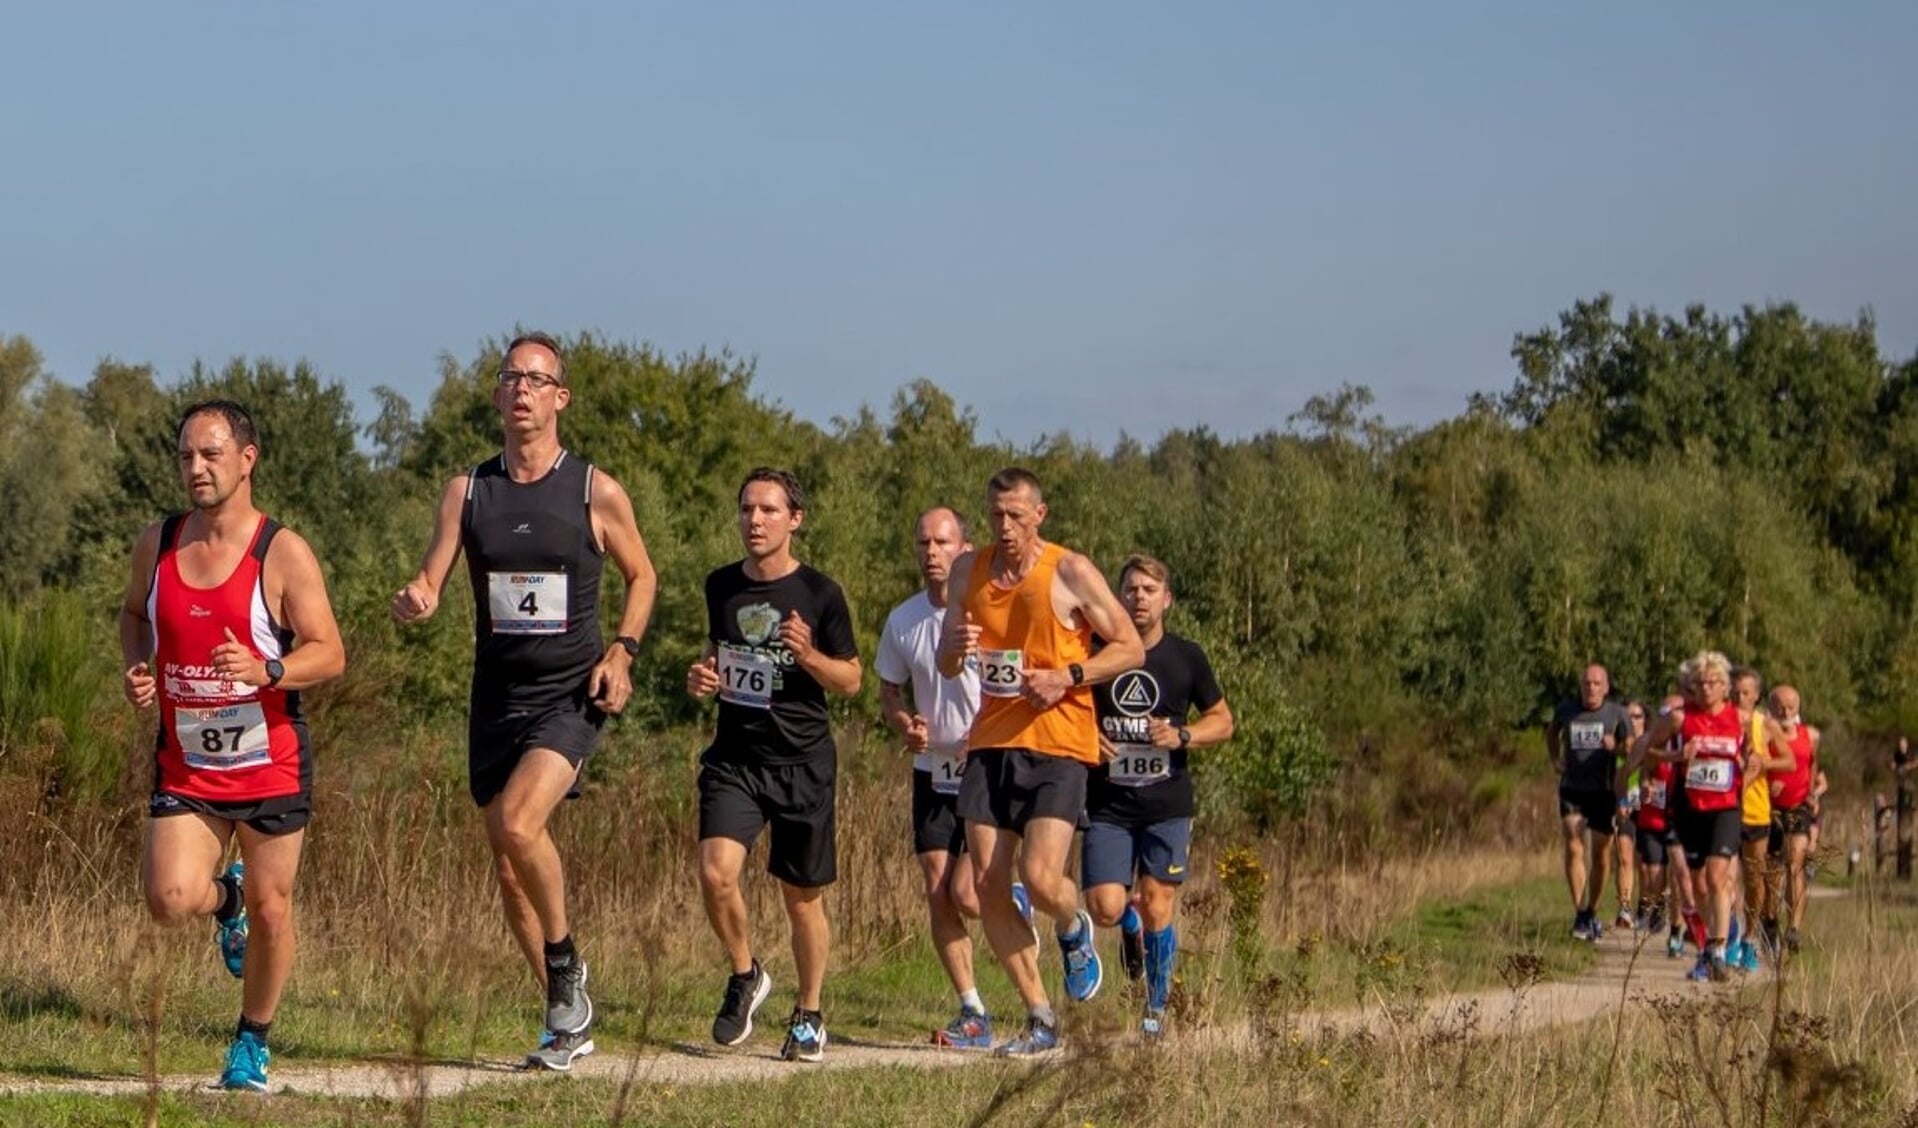 Net als bij de onlangs gehouden Kuilenloop in Langenboom (foto) rekent de organisatie van de Graancirkelloop in Oploo op een recordaantal deelnemers.